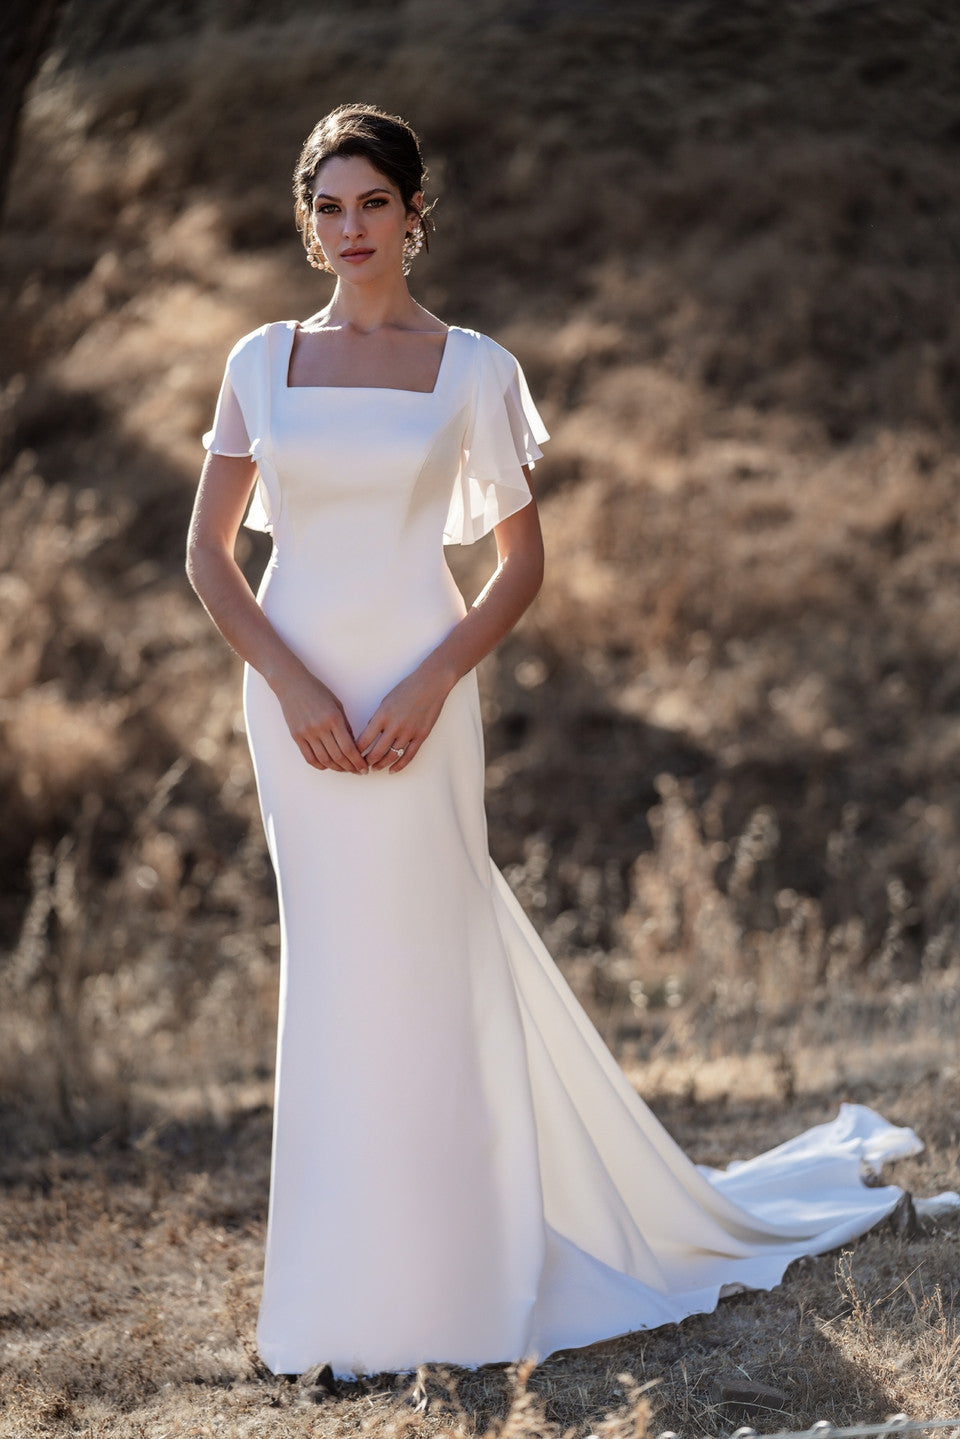 M701 Modest Wedding Dress